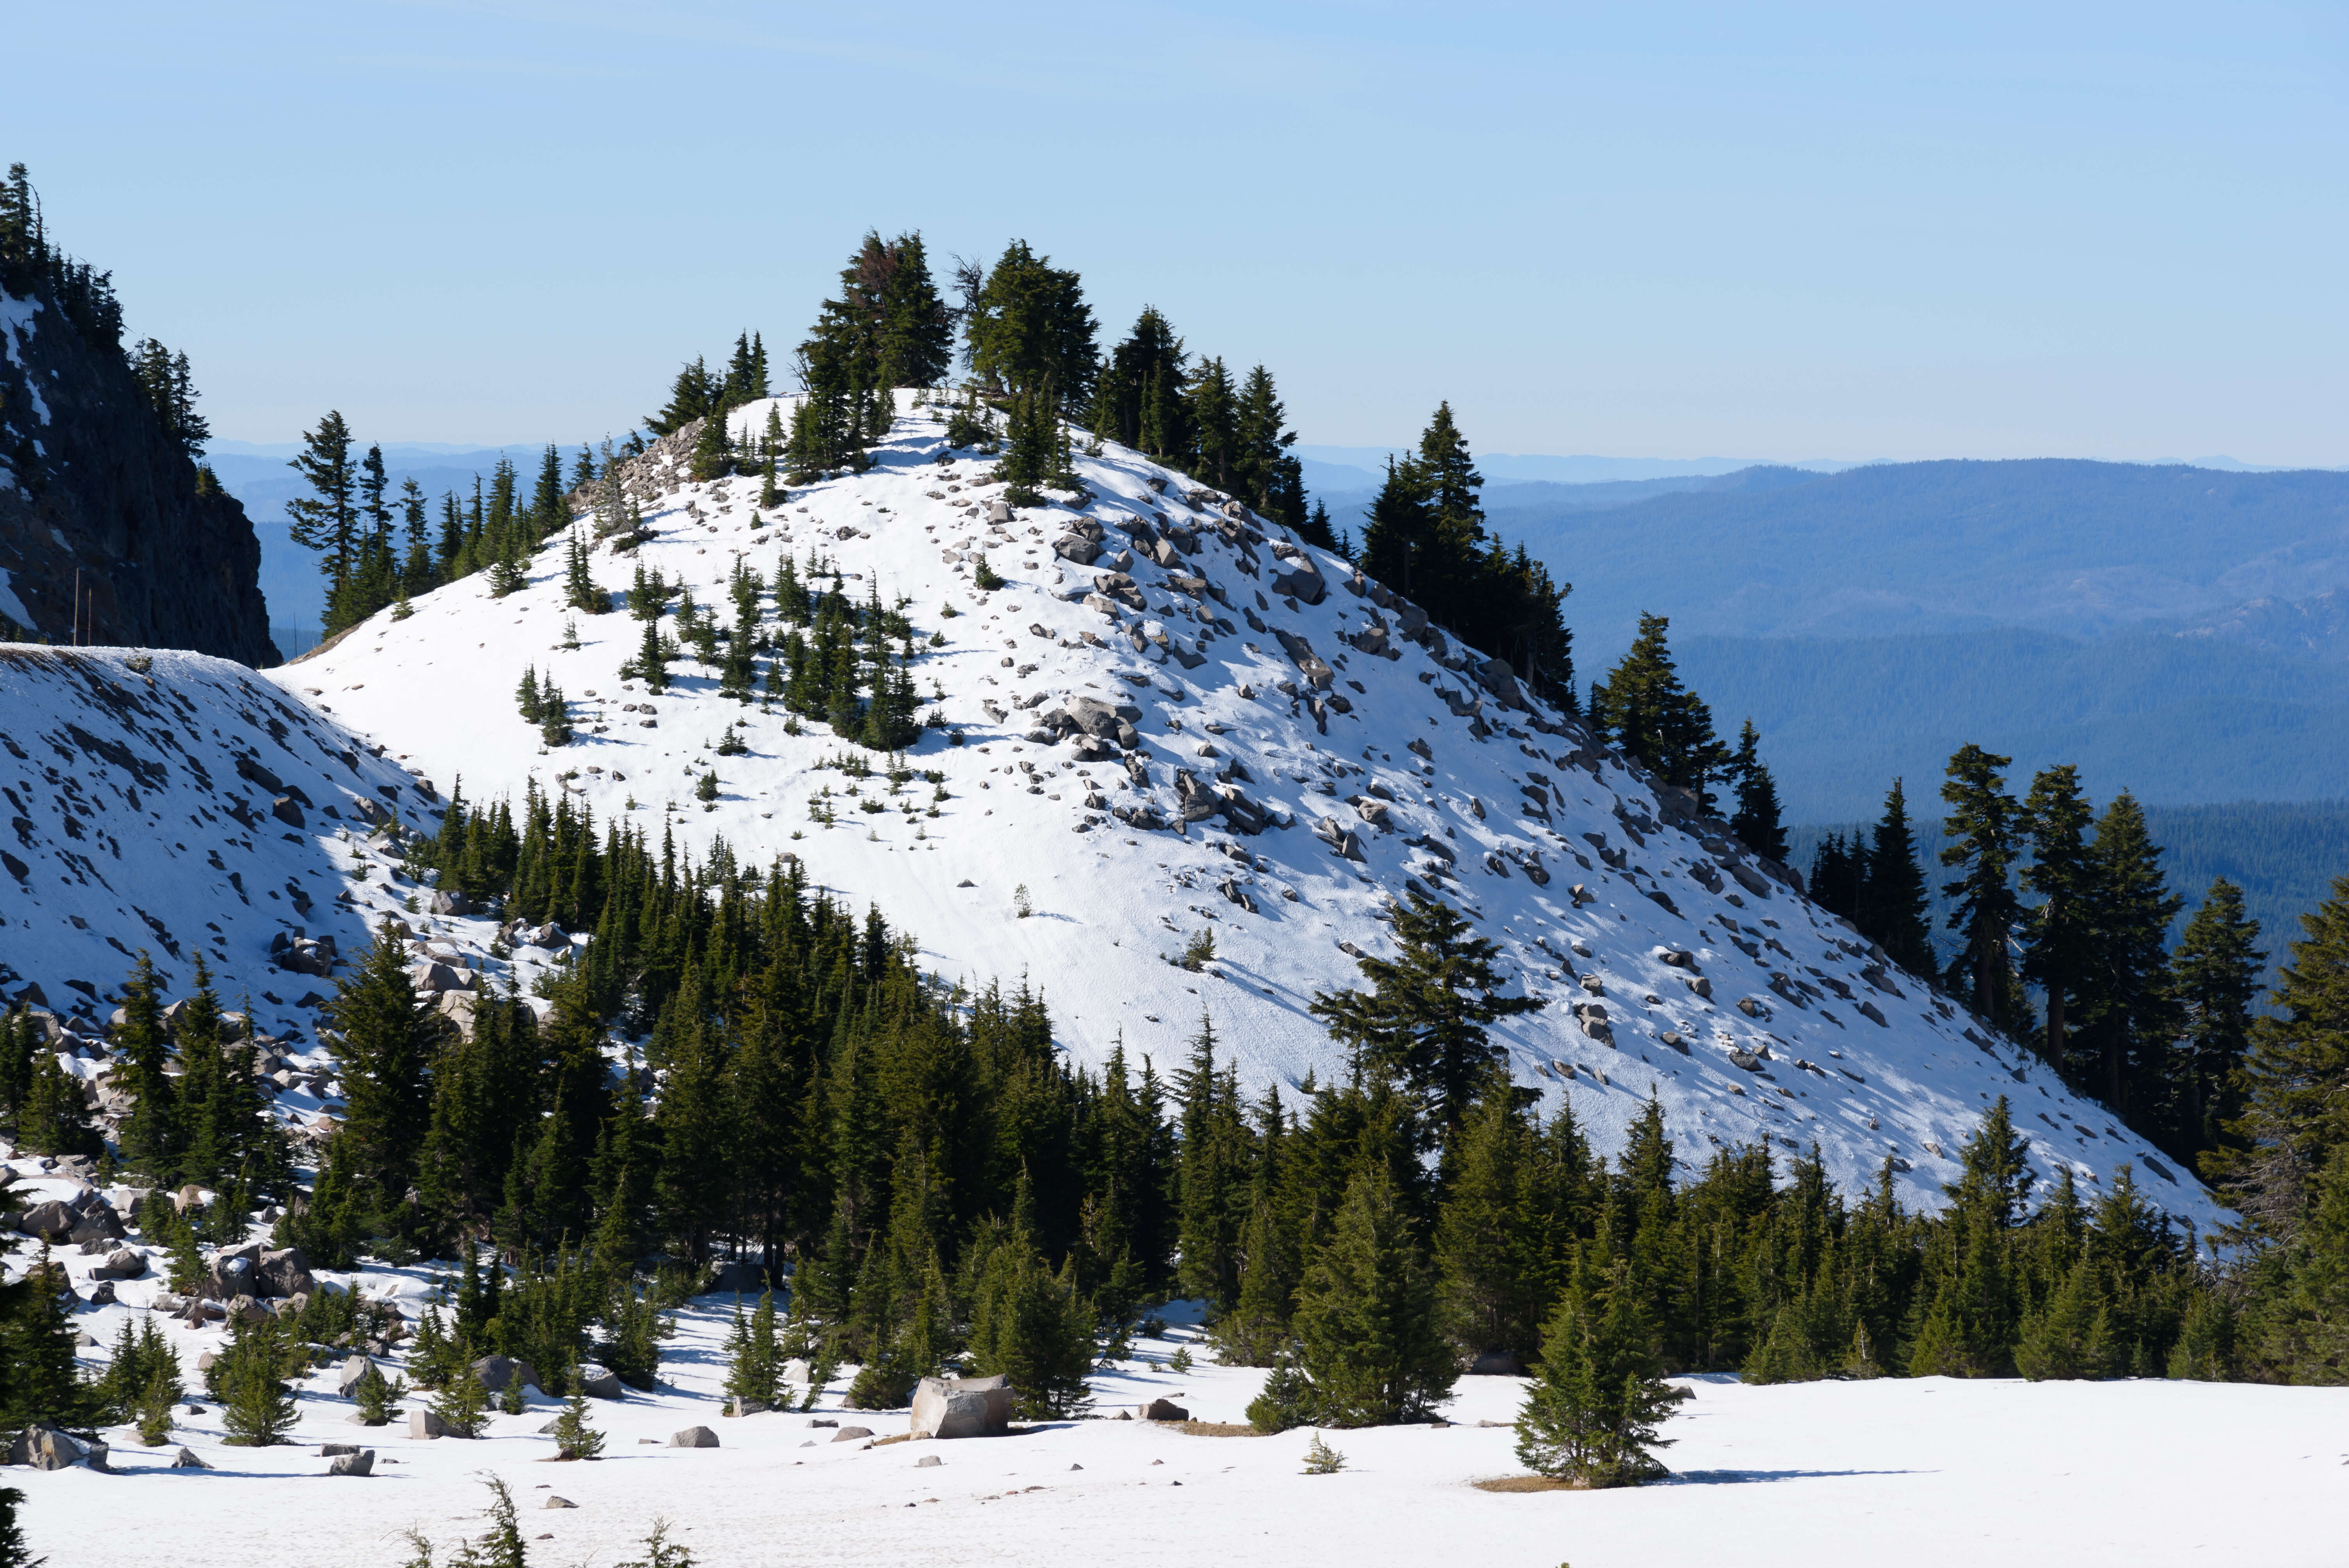 Image of Mountain Hemlock